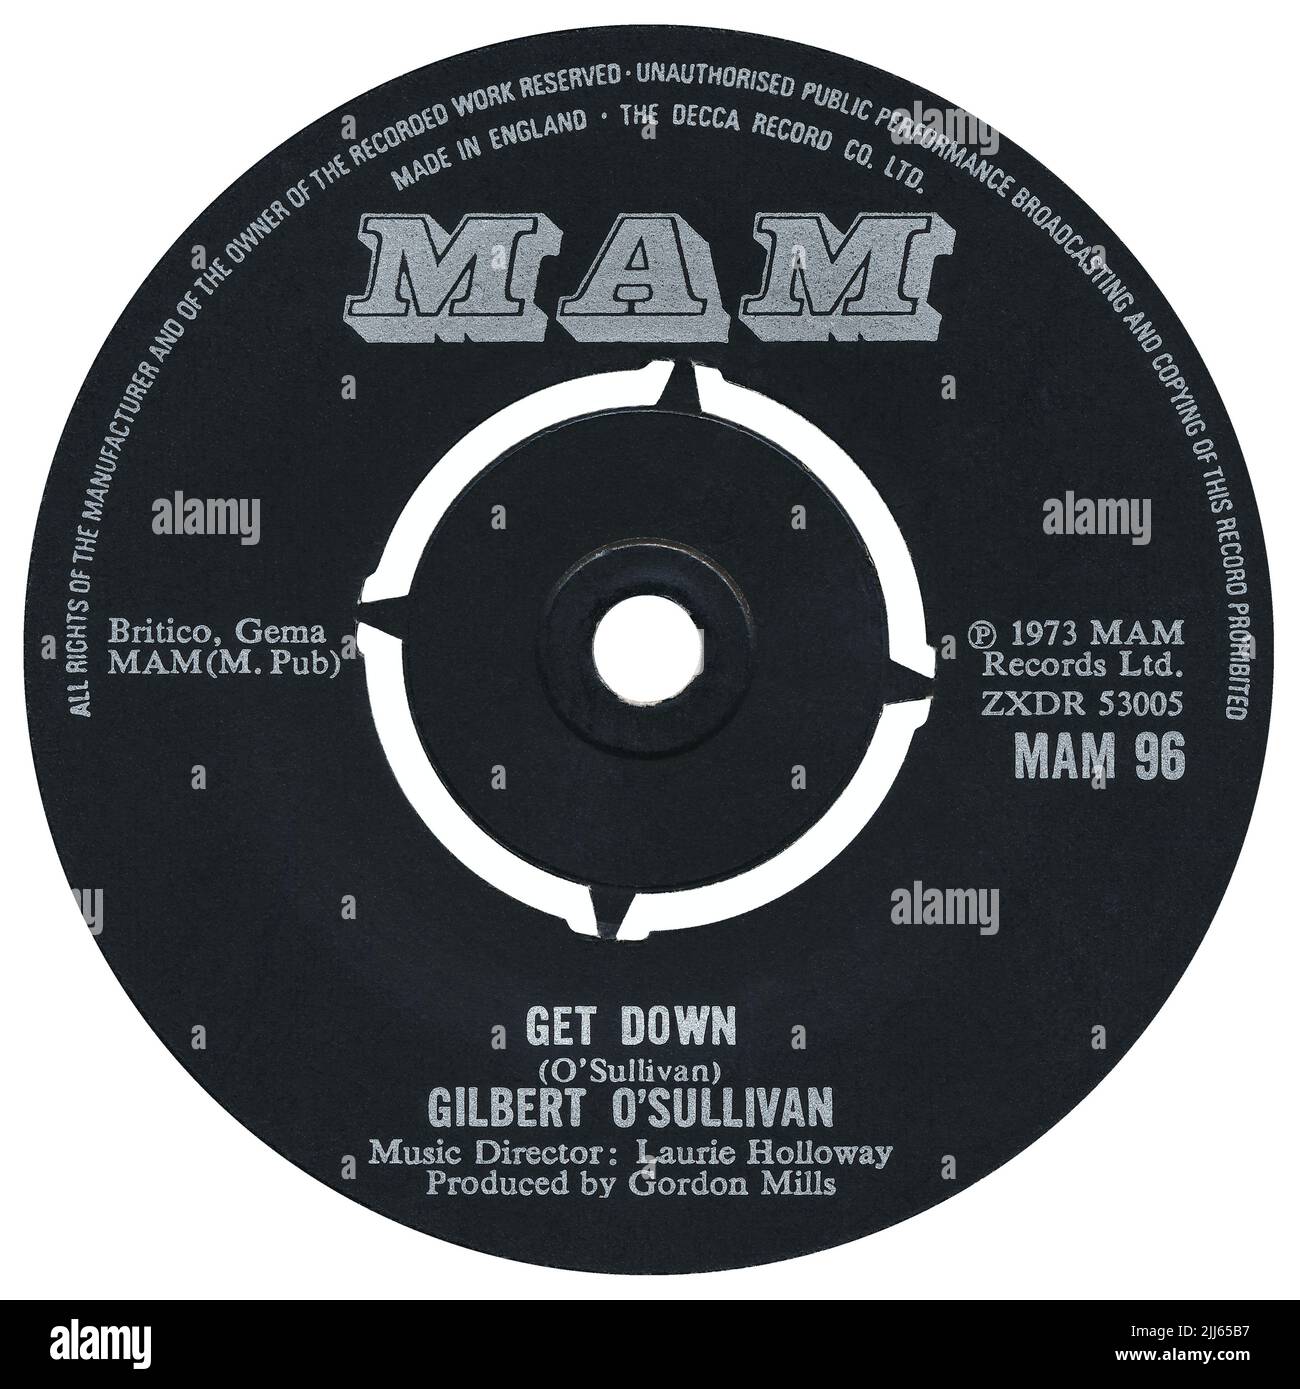 45 RPM 7', sello discográfico pop británico Get Down de Gilbert O'Sullivan. Escrito por Gilbert O'Sullivan, arreglado por Laurie Holloway y producido por Gordon Mills. Publicado en marzo de 1973 con el sello MAM. Foto de stock